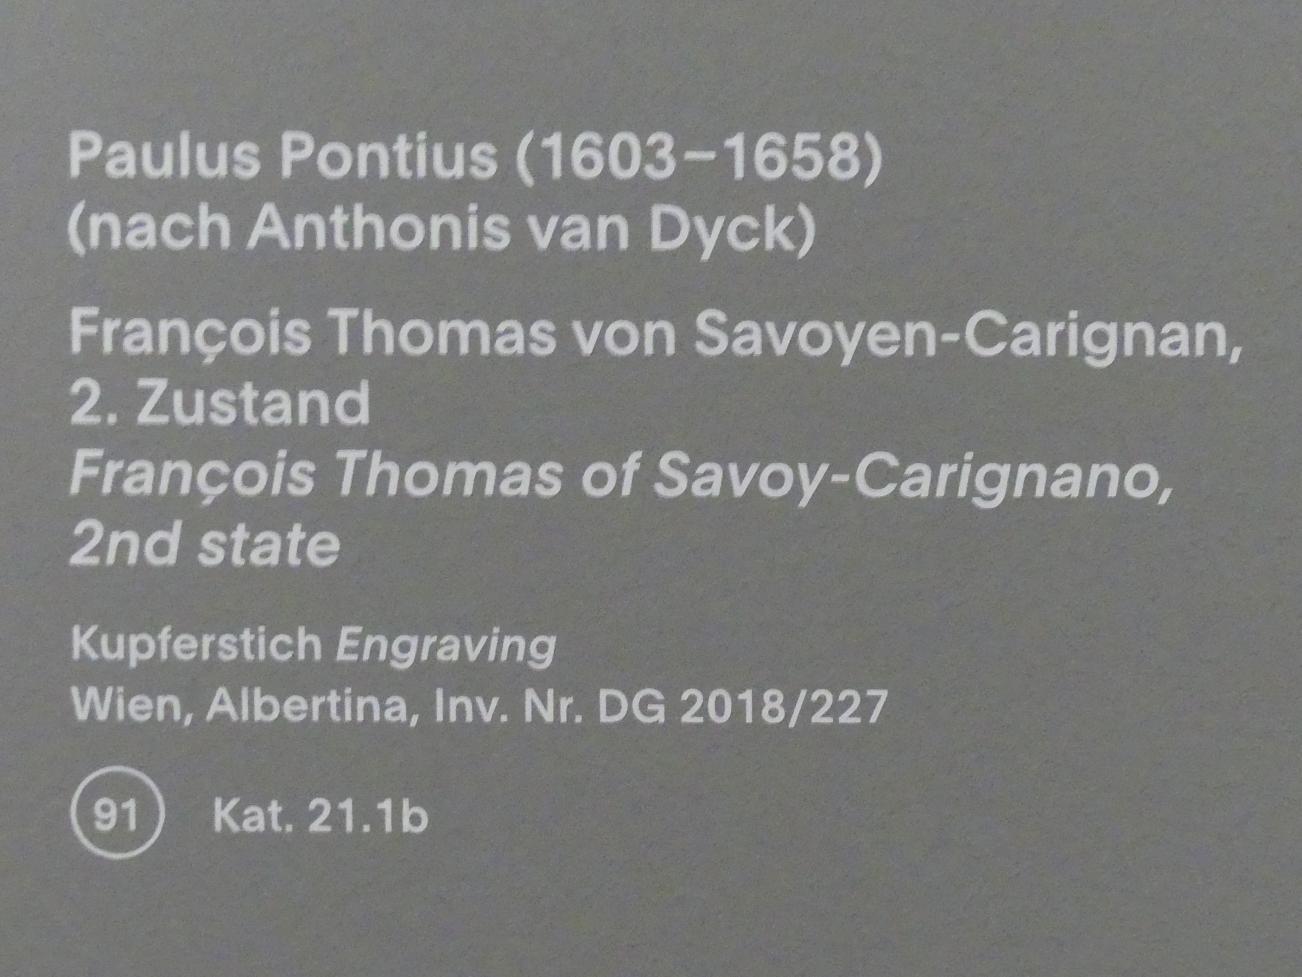 Paulus Pontius (Undatiert), François Thomas von Savoyen-Carignan, 2. Zustand, München, Alte Pinakothek, Ausstellung "Van Dyck" vom 25.10.2019-02.02.2020, Die "Ikonographie" - 2, Undatiert, Bild 3/3